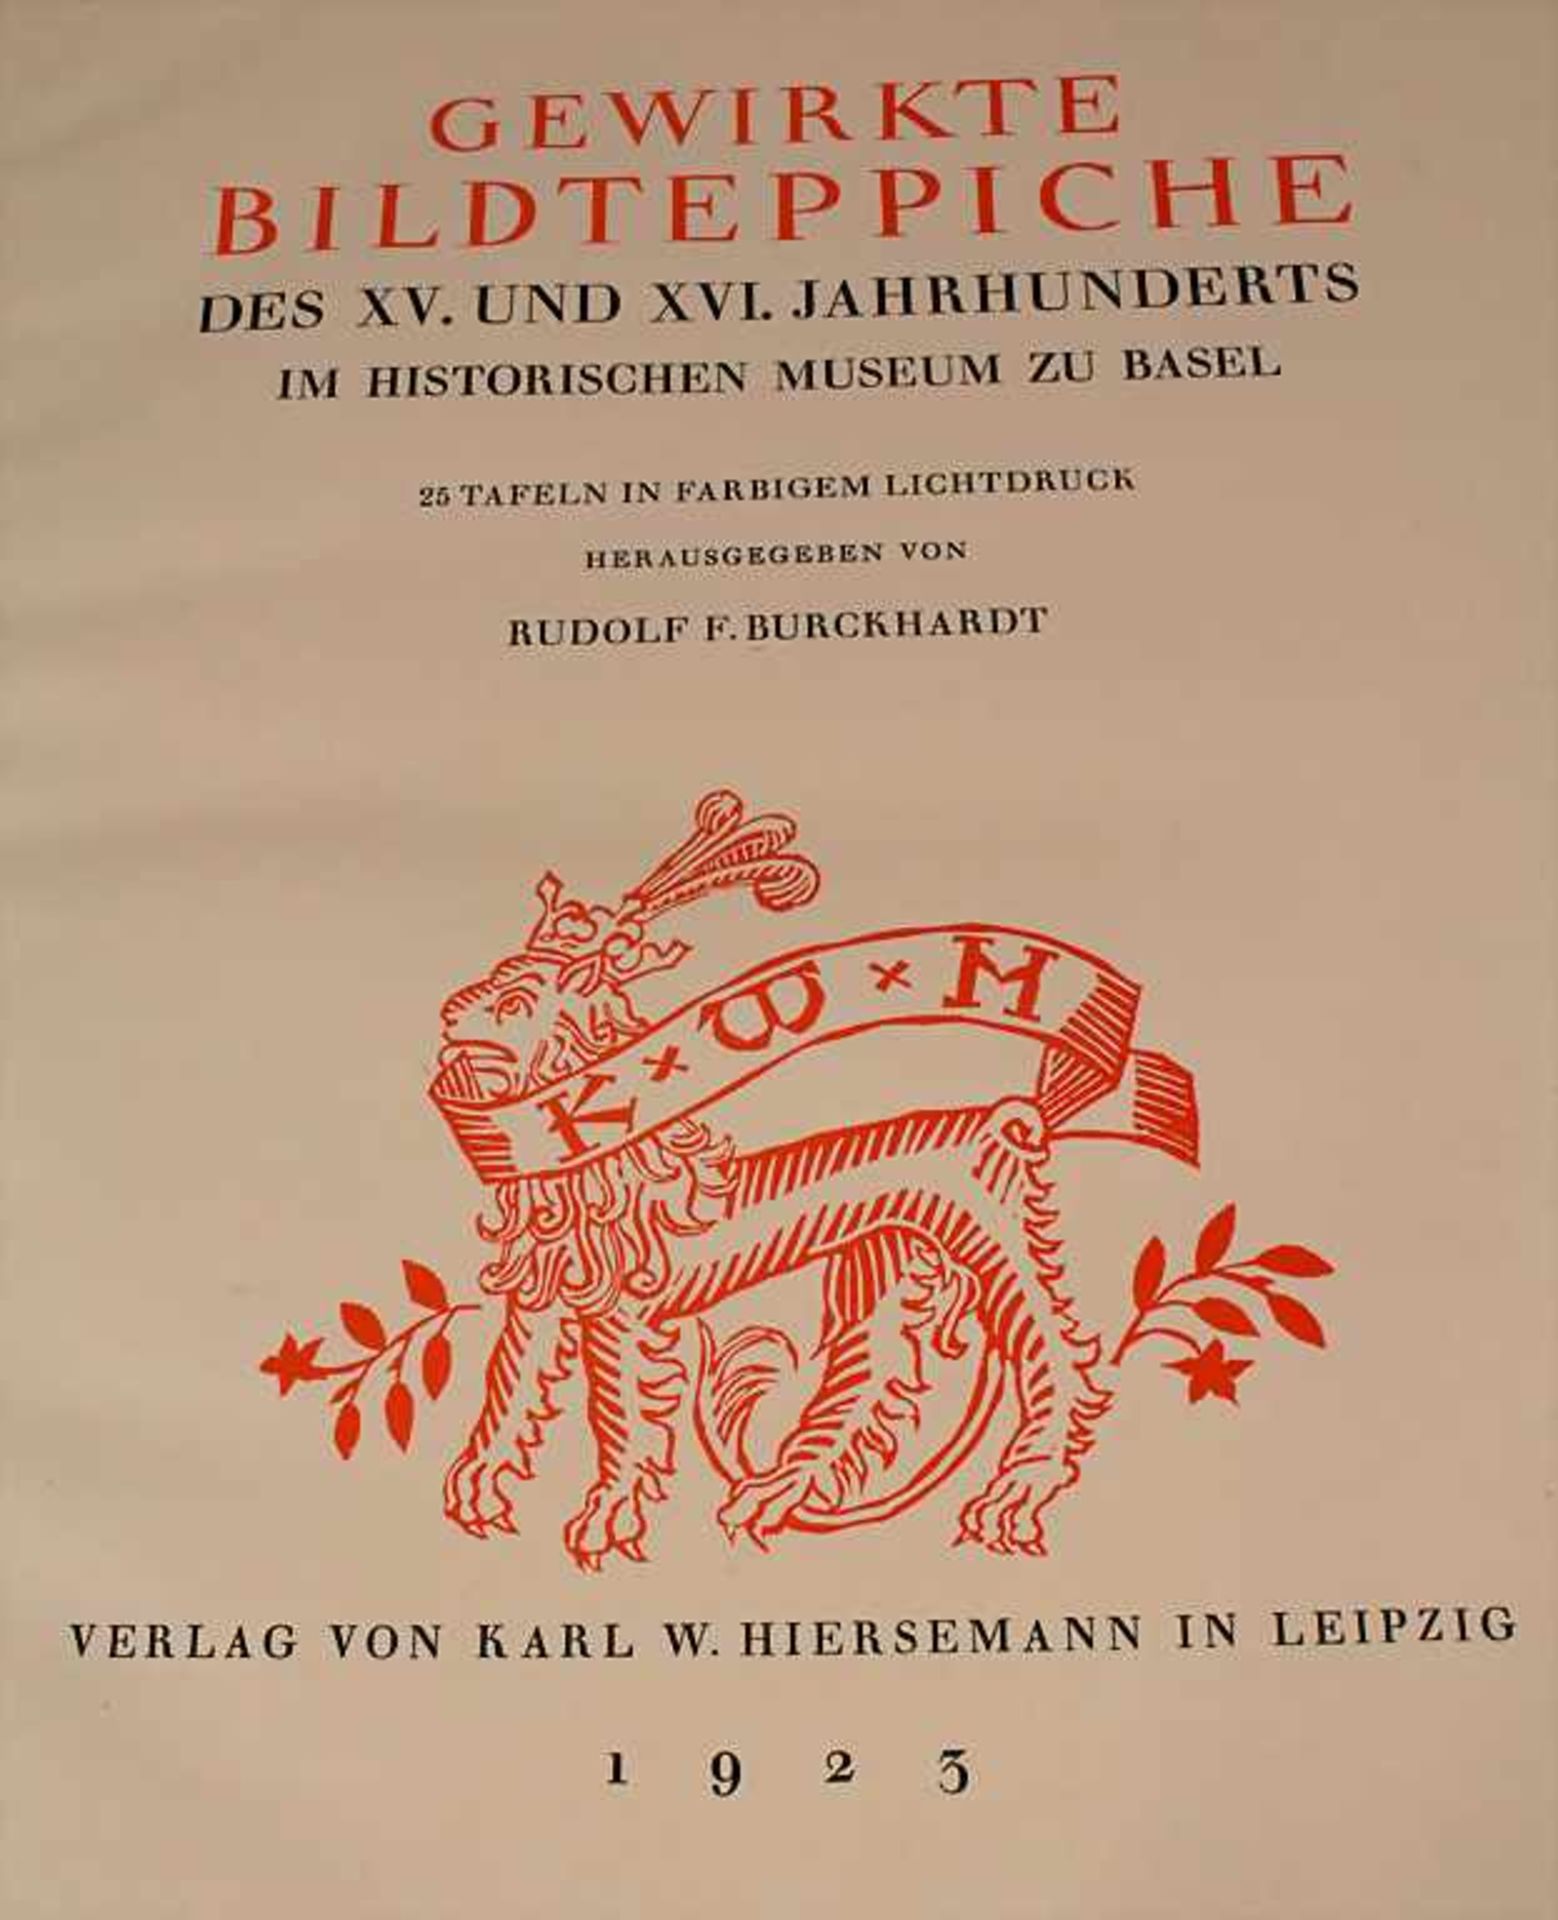 Rudolf F. Burckhardt (Hg), 'Gewirkte Bildteppiche des XV. und XVI. Jahrhunderts', 1923 - Image 2 of 7